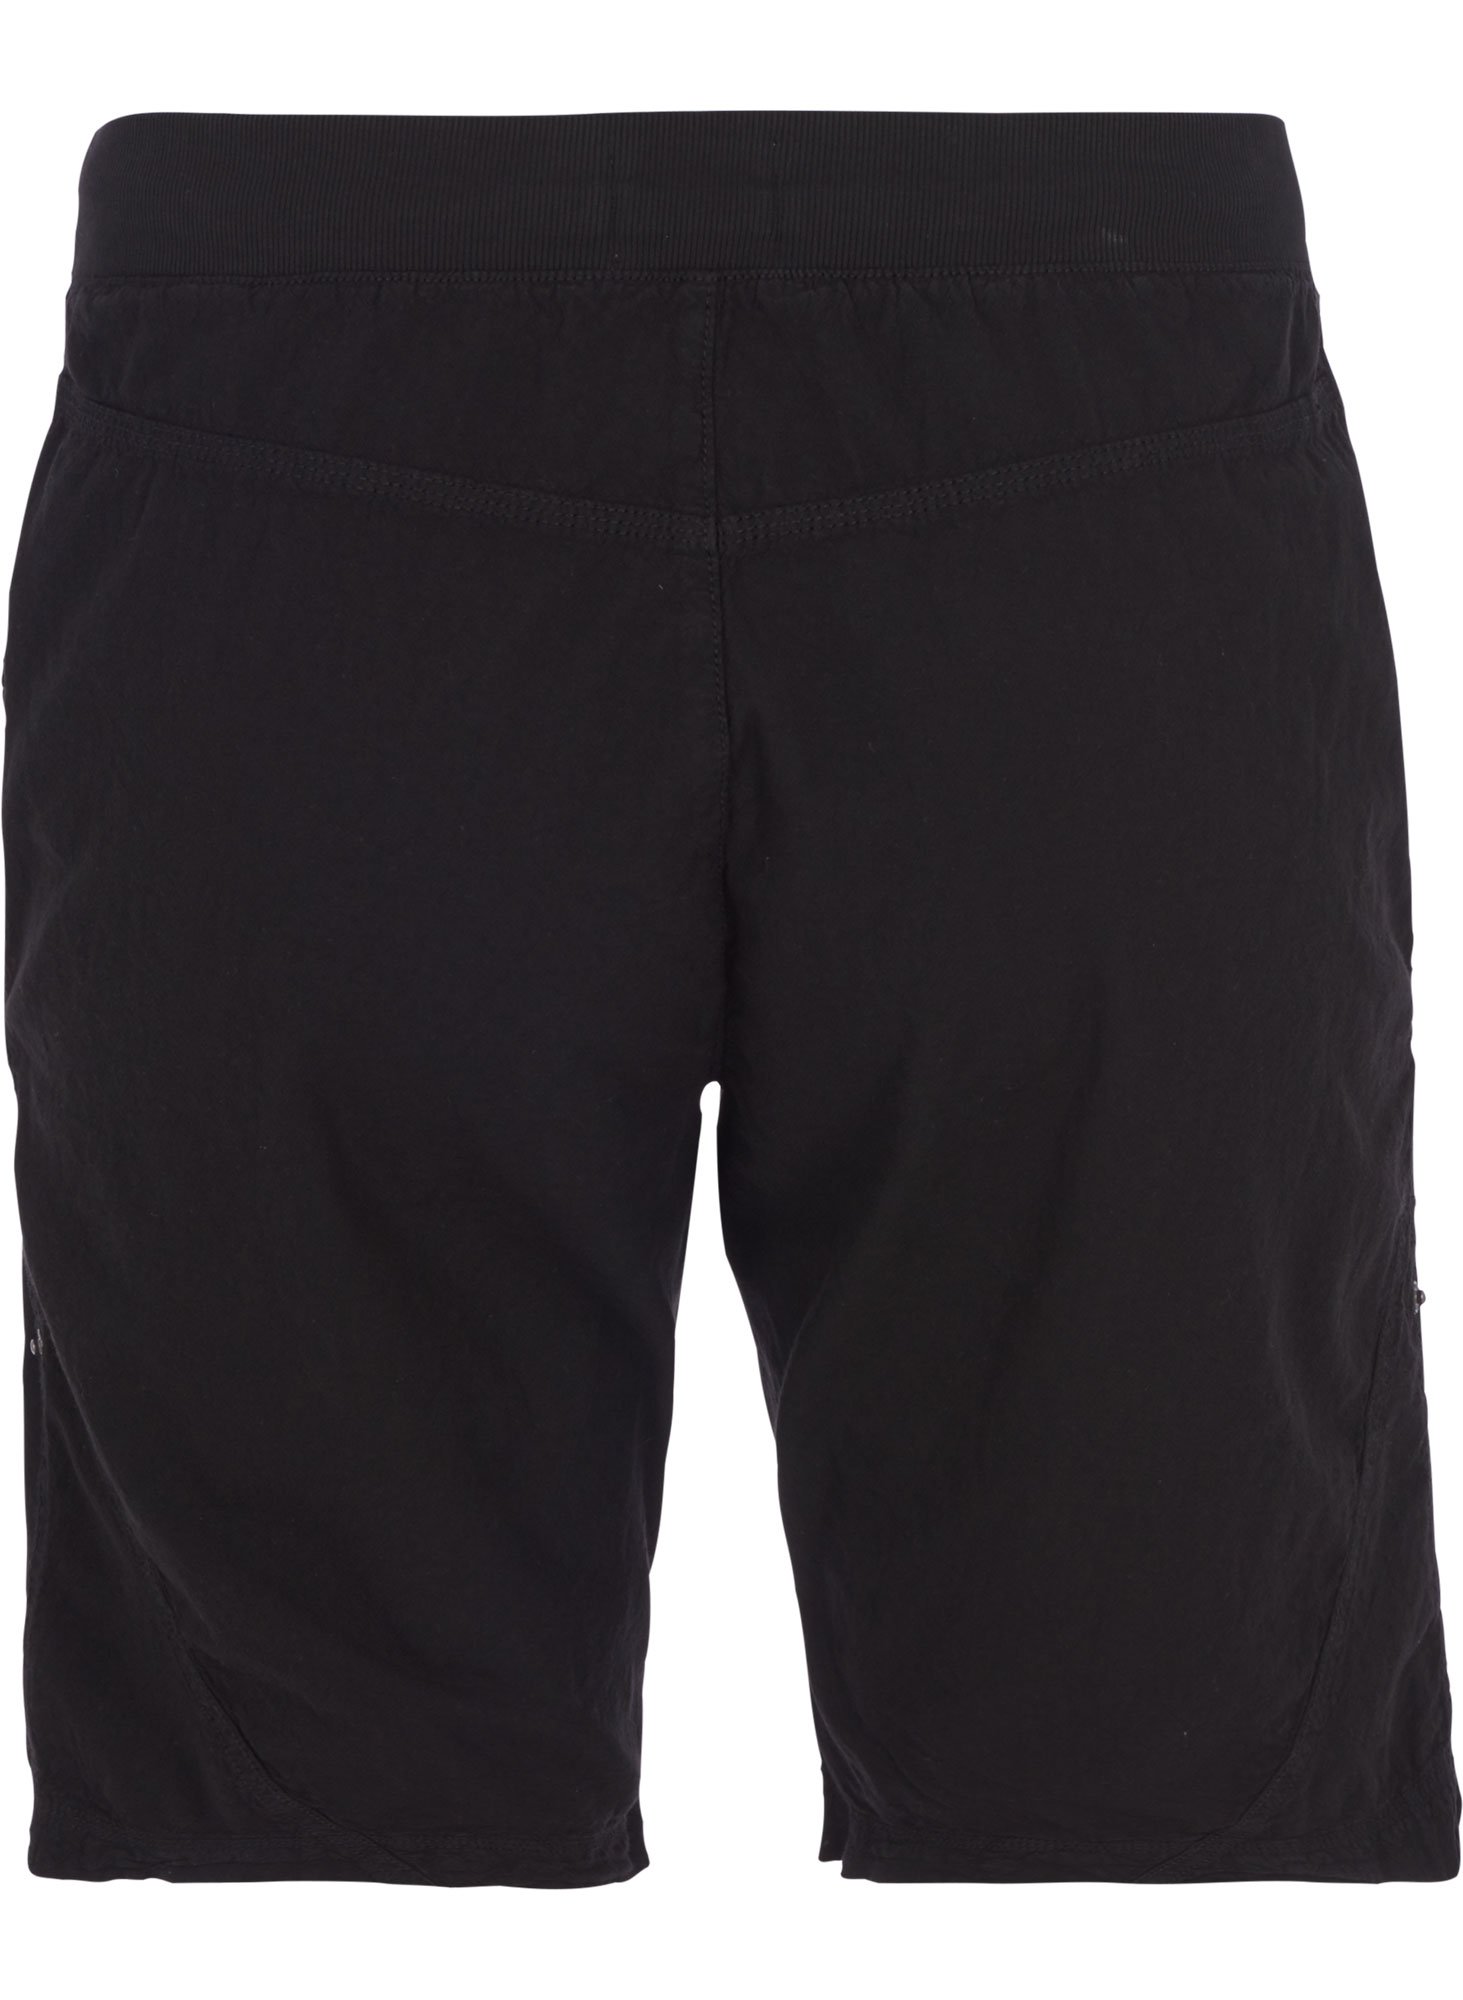 skønne sorte shorts i 100% bomuld fra Zizzi